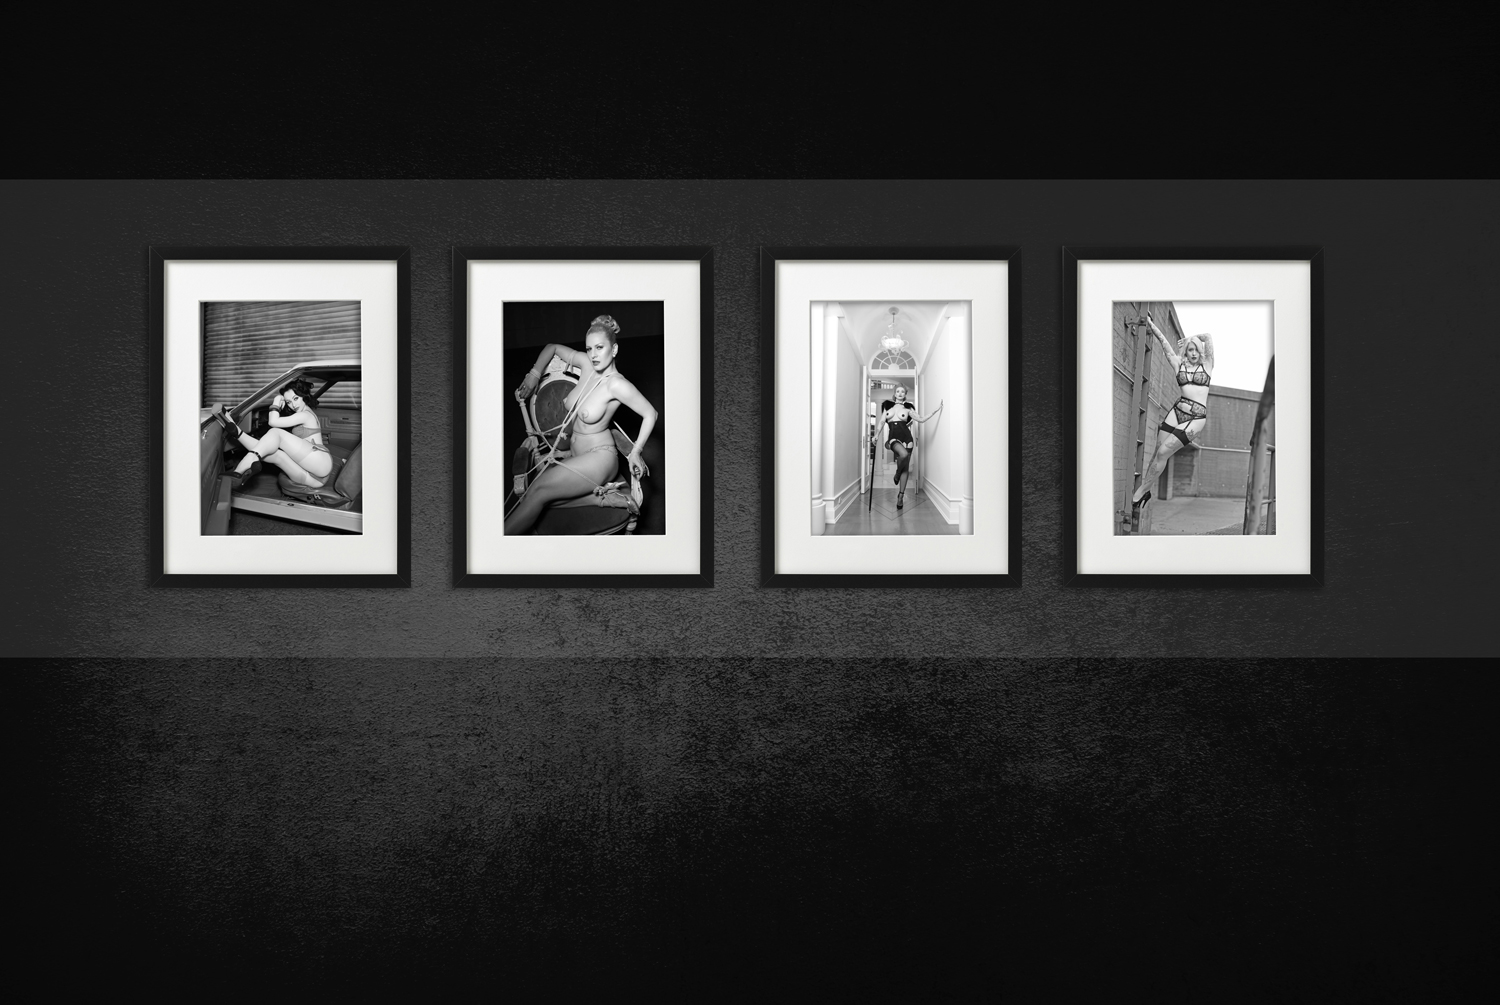 THE ART OF CARLOS KELLA: Modern Pin-Up Fotografie in Schwarz-Weiß – Einladung zur Vernissage in der Boutique Bizarre am Sonntag, den 08.12.2020 von 16:00 - 19:00 Uhr.